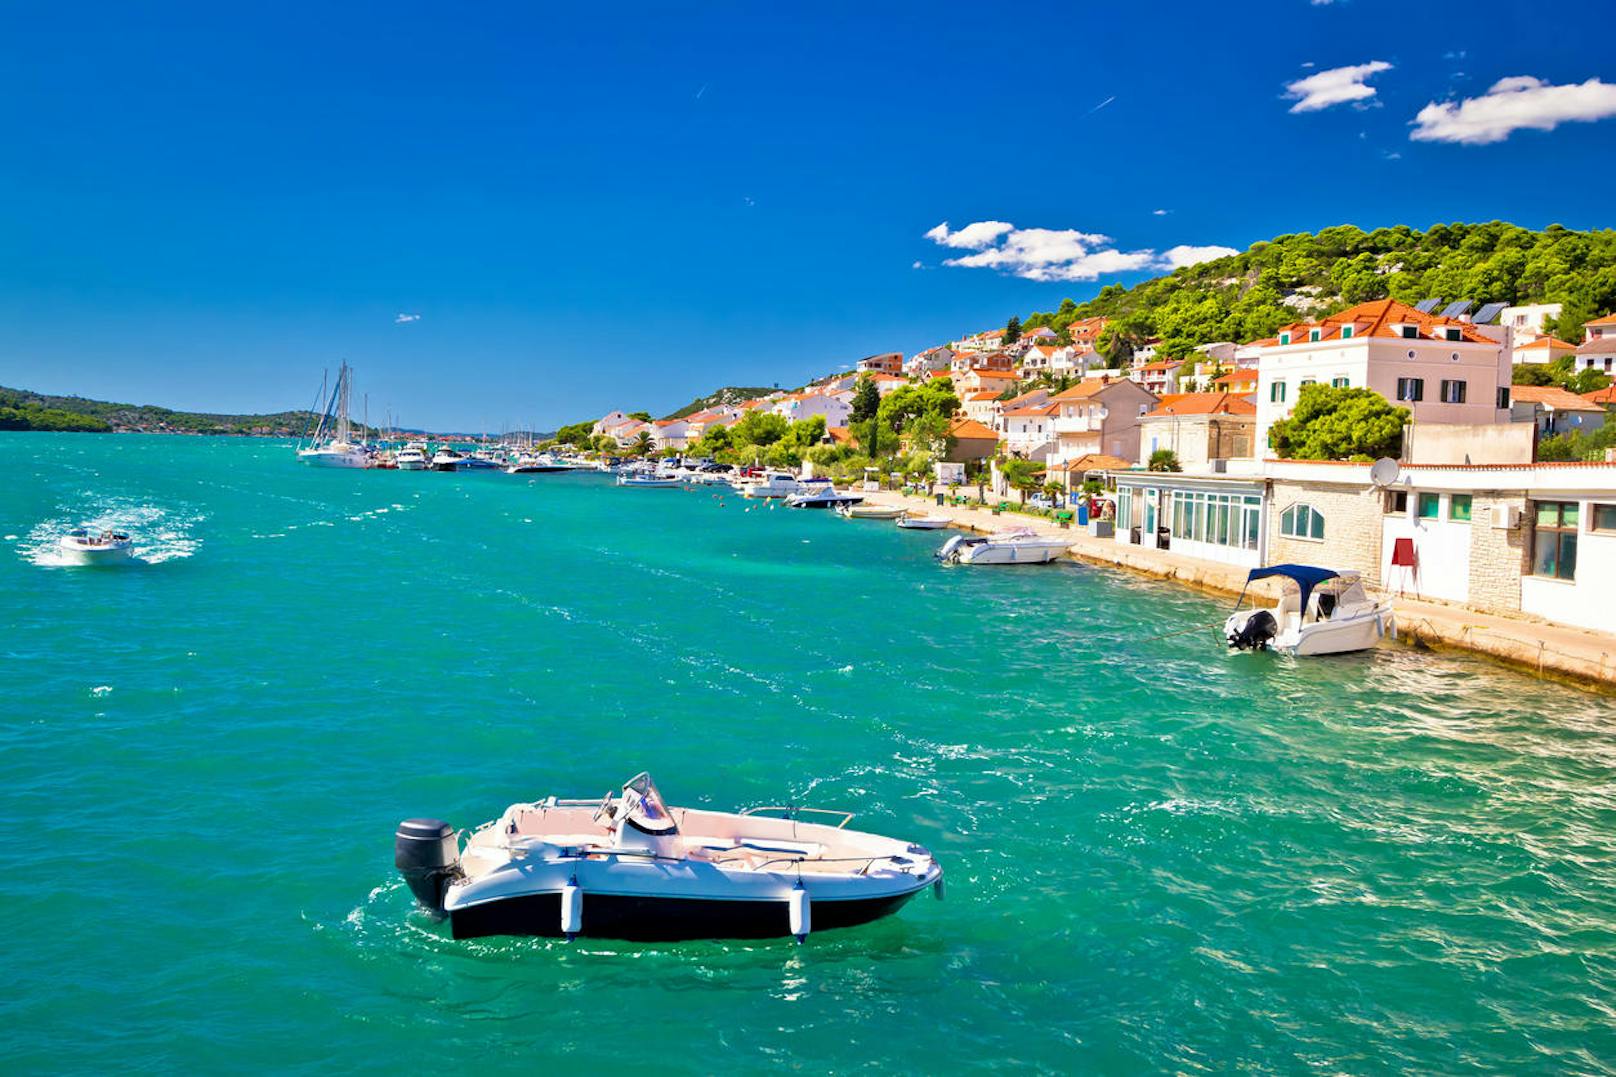 Die Insel Murter ist, wie so viele Inseln Kroatiens, stark vom Fischfang geprägt, und so findet ihr hier nicht nur prächtige Hafenorte, die zum Spazieren an der Küste einladen, sondern auch jede Menge Restaurants und Cafés, die kulinarische Köstlichkeiten aus der kroatischen Meeresfrüchte-Küche anbieten.